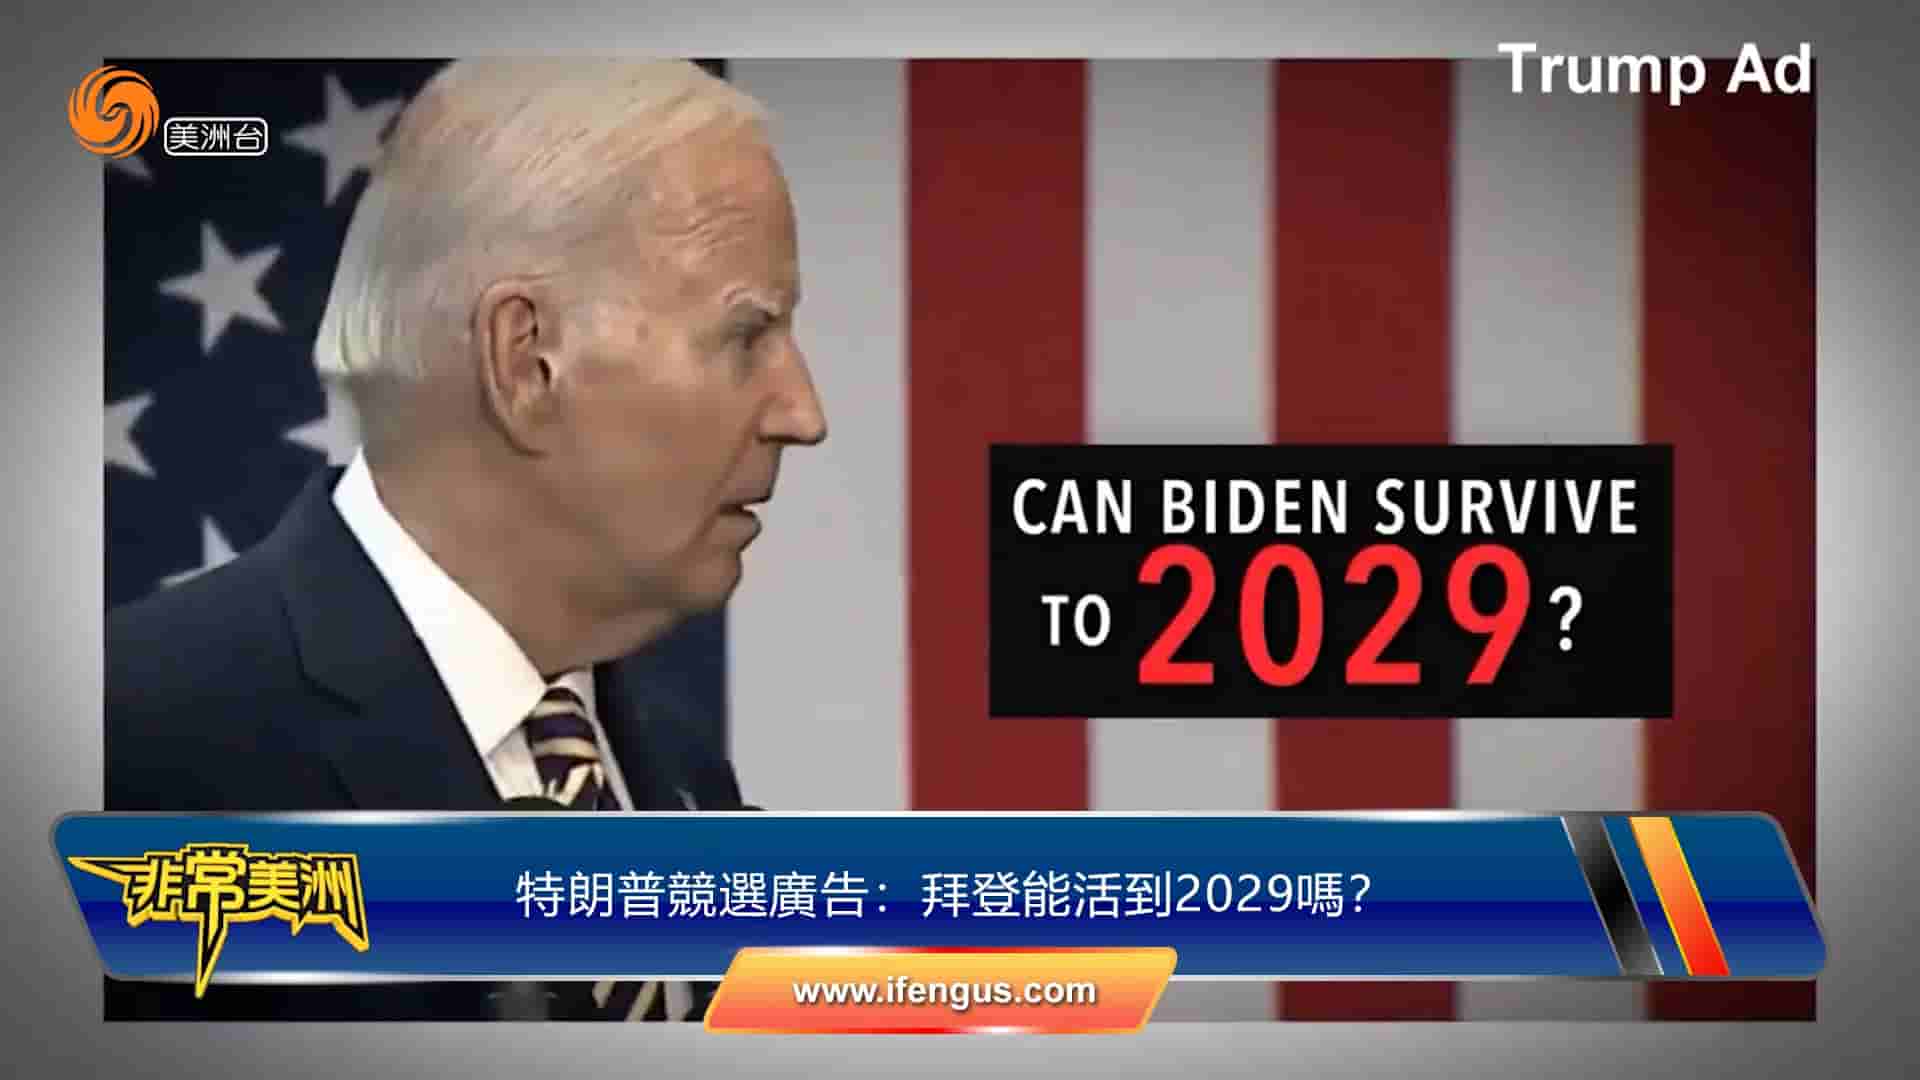 特朗普竞选广告：拜登能活到2029吗？